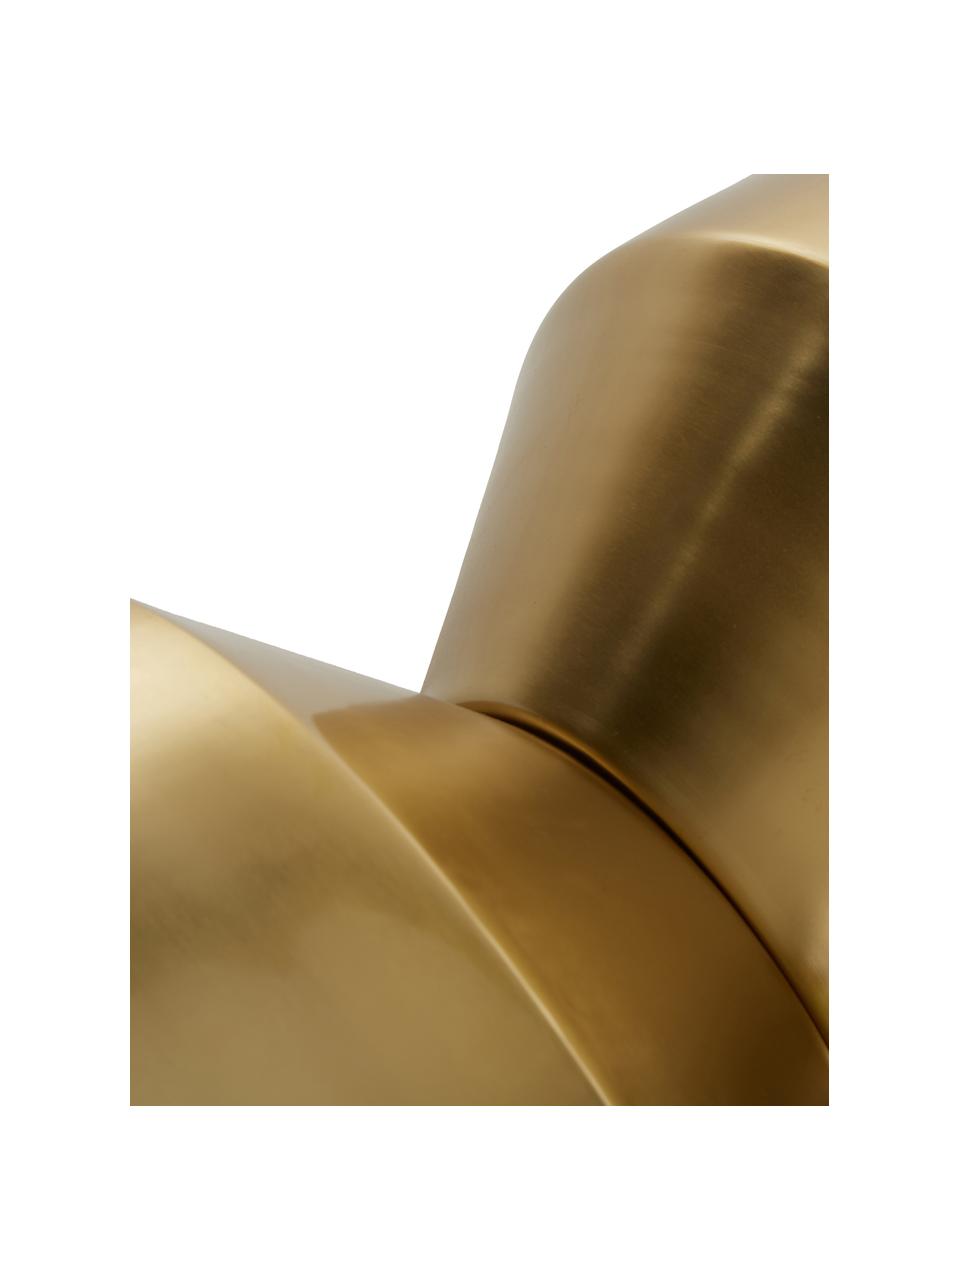 Beistelltisch Juliana, Metall, beschichtet, Goldfarben, leicht glänzend, Ø 36 x H 45 cm